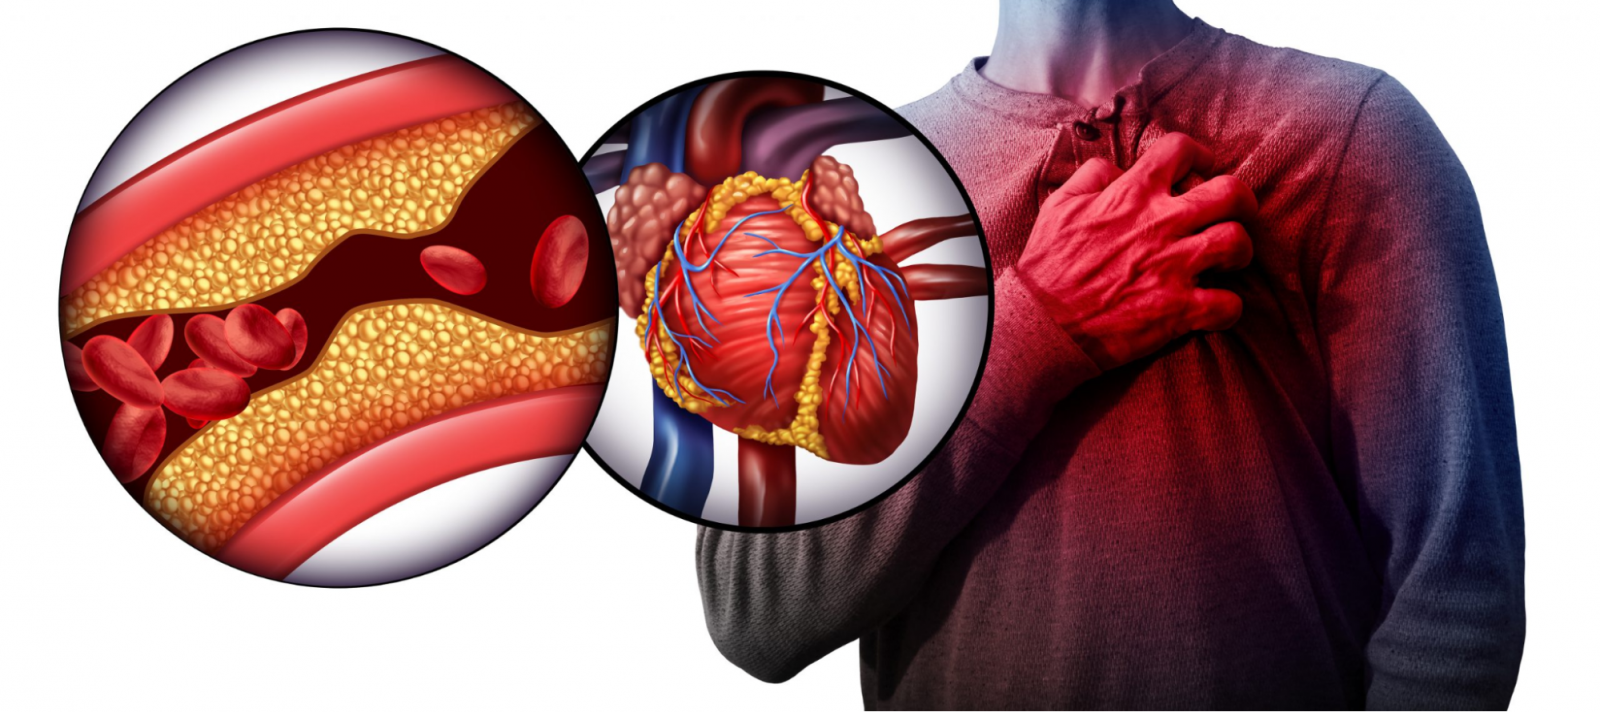 Thuốc lá điện tử chứa nhiều chất độc hại gây bệnh tim mạch